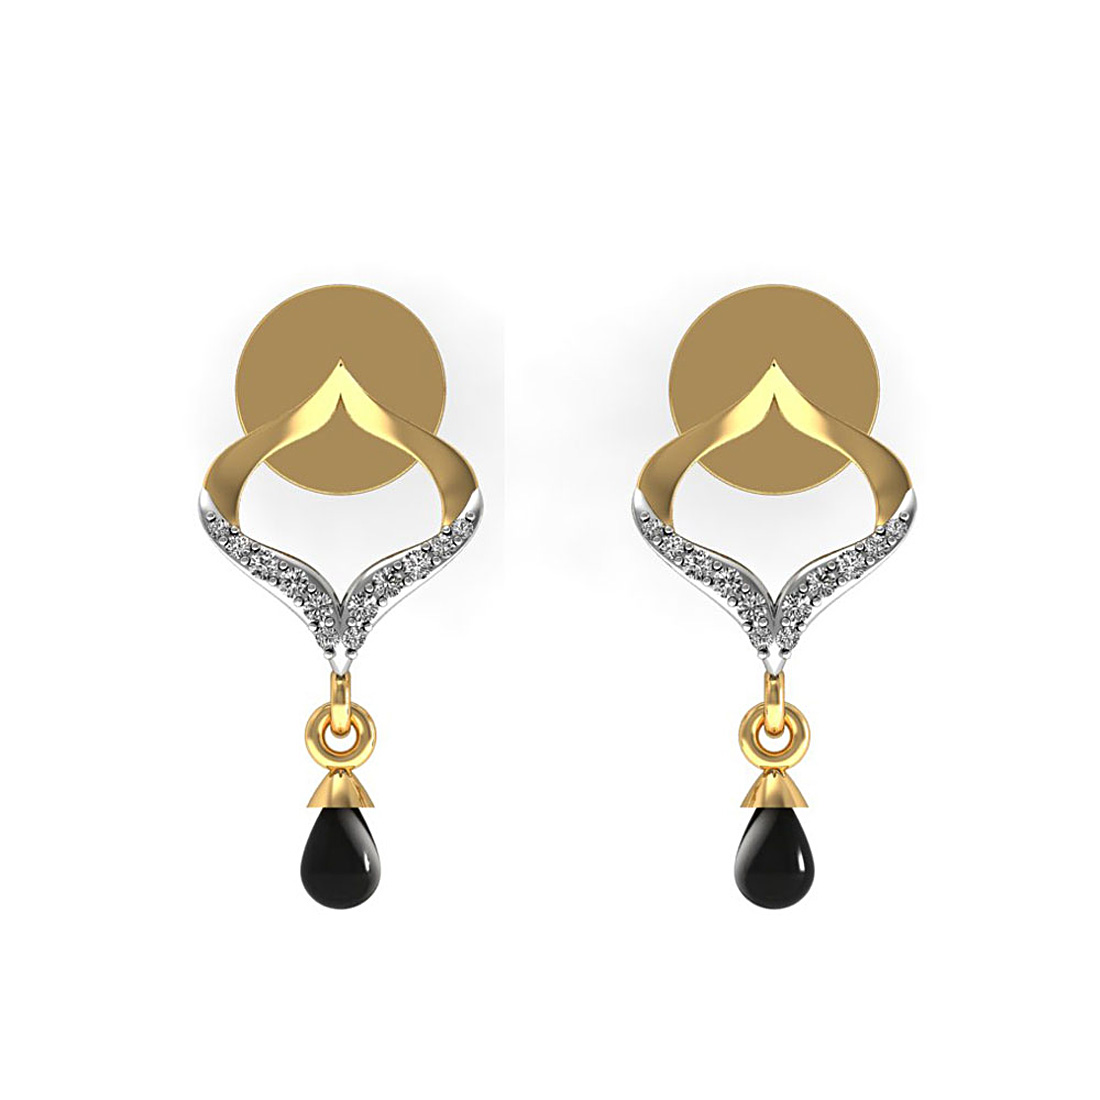 Diamond & onyx drop stud earrings made in 18k gold